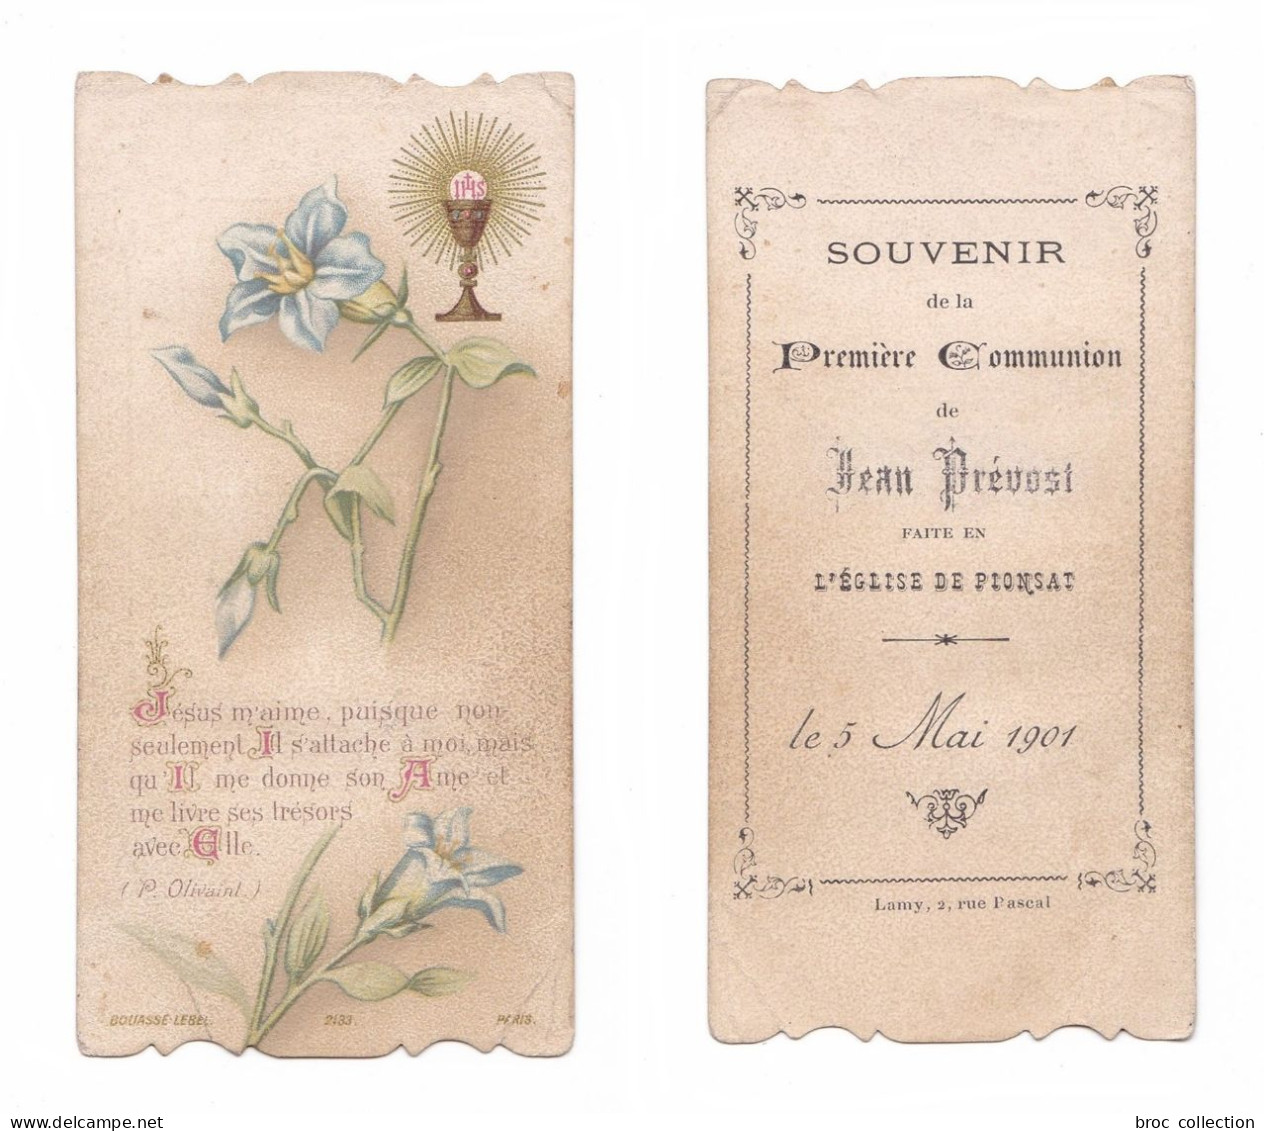 Pionsat, 1re Communion De Jean Prévost, 1901, Citation P. Olivaint, éd. Bouasse-jeune N° 2133 - Devotieprenten